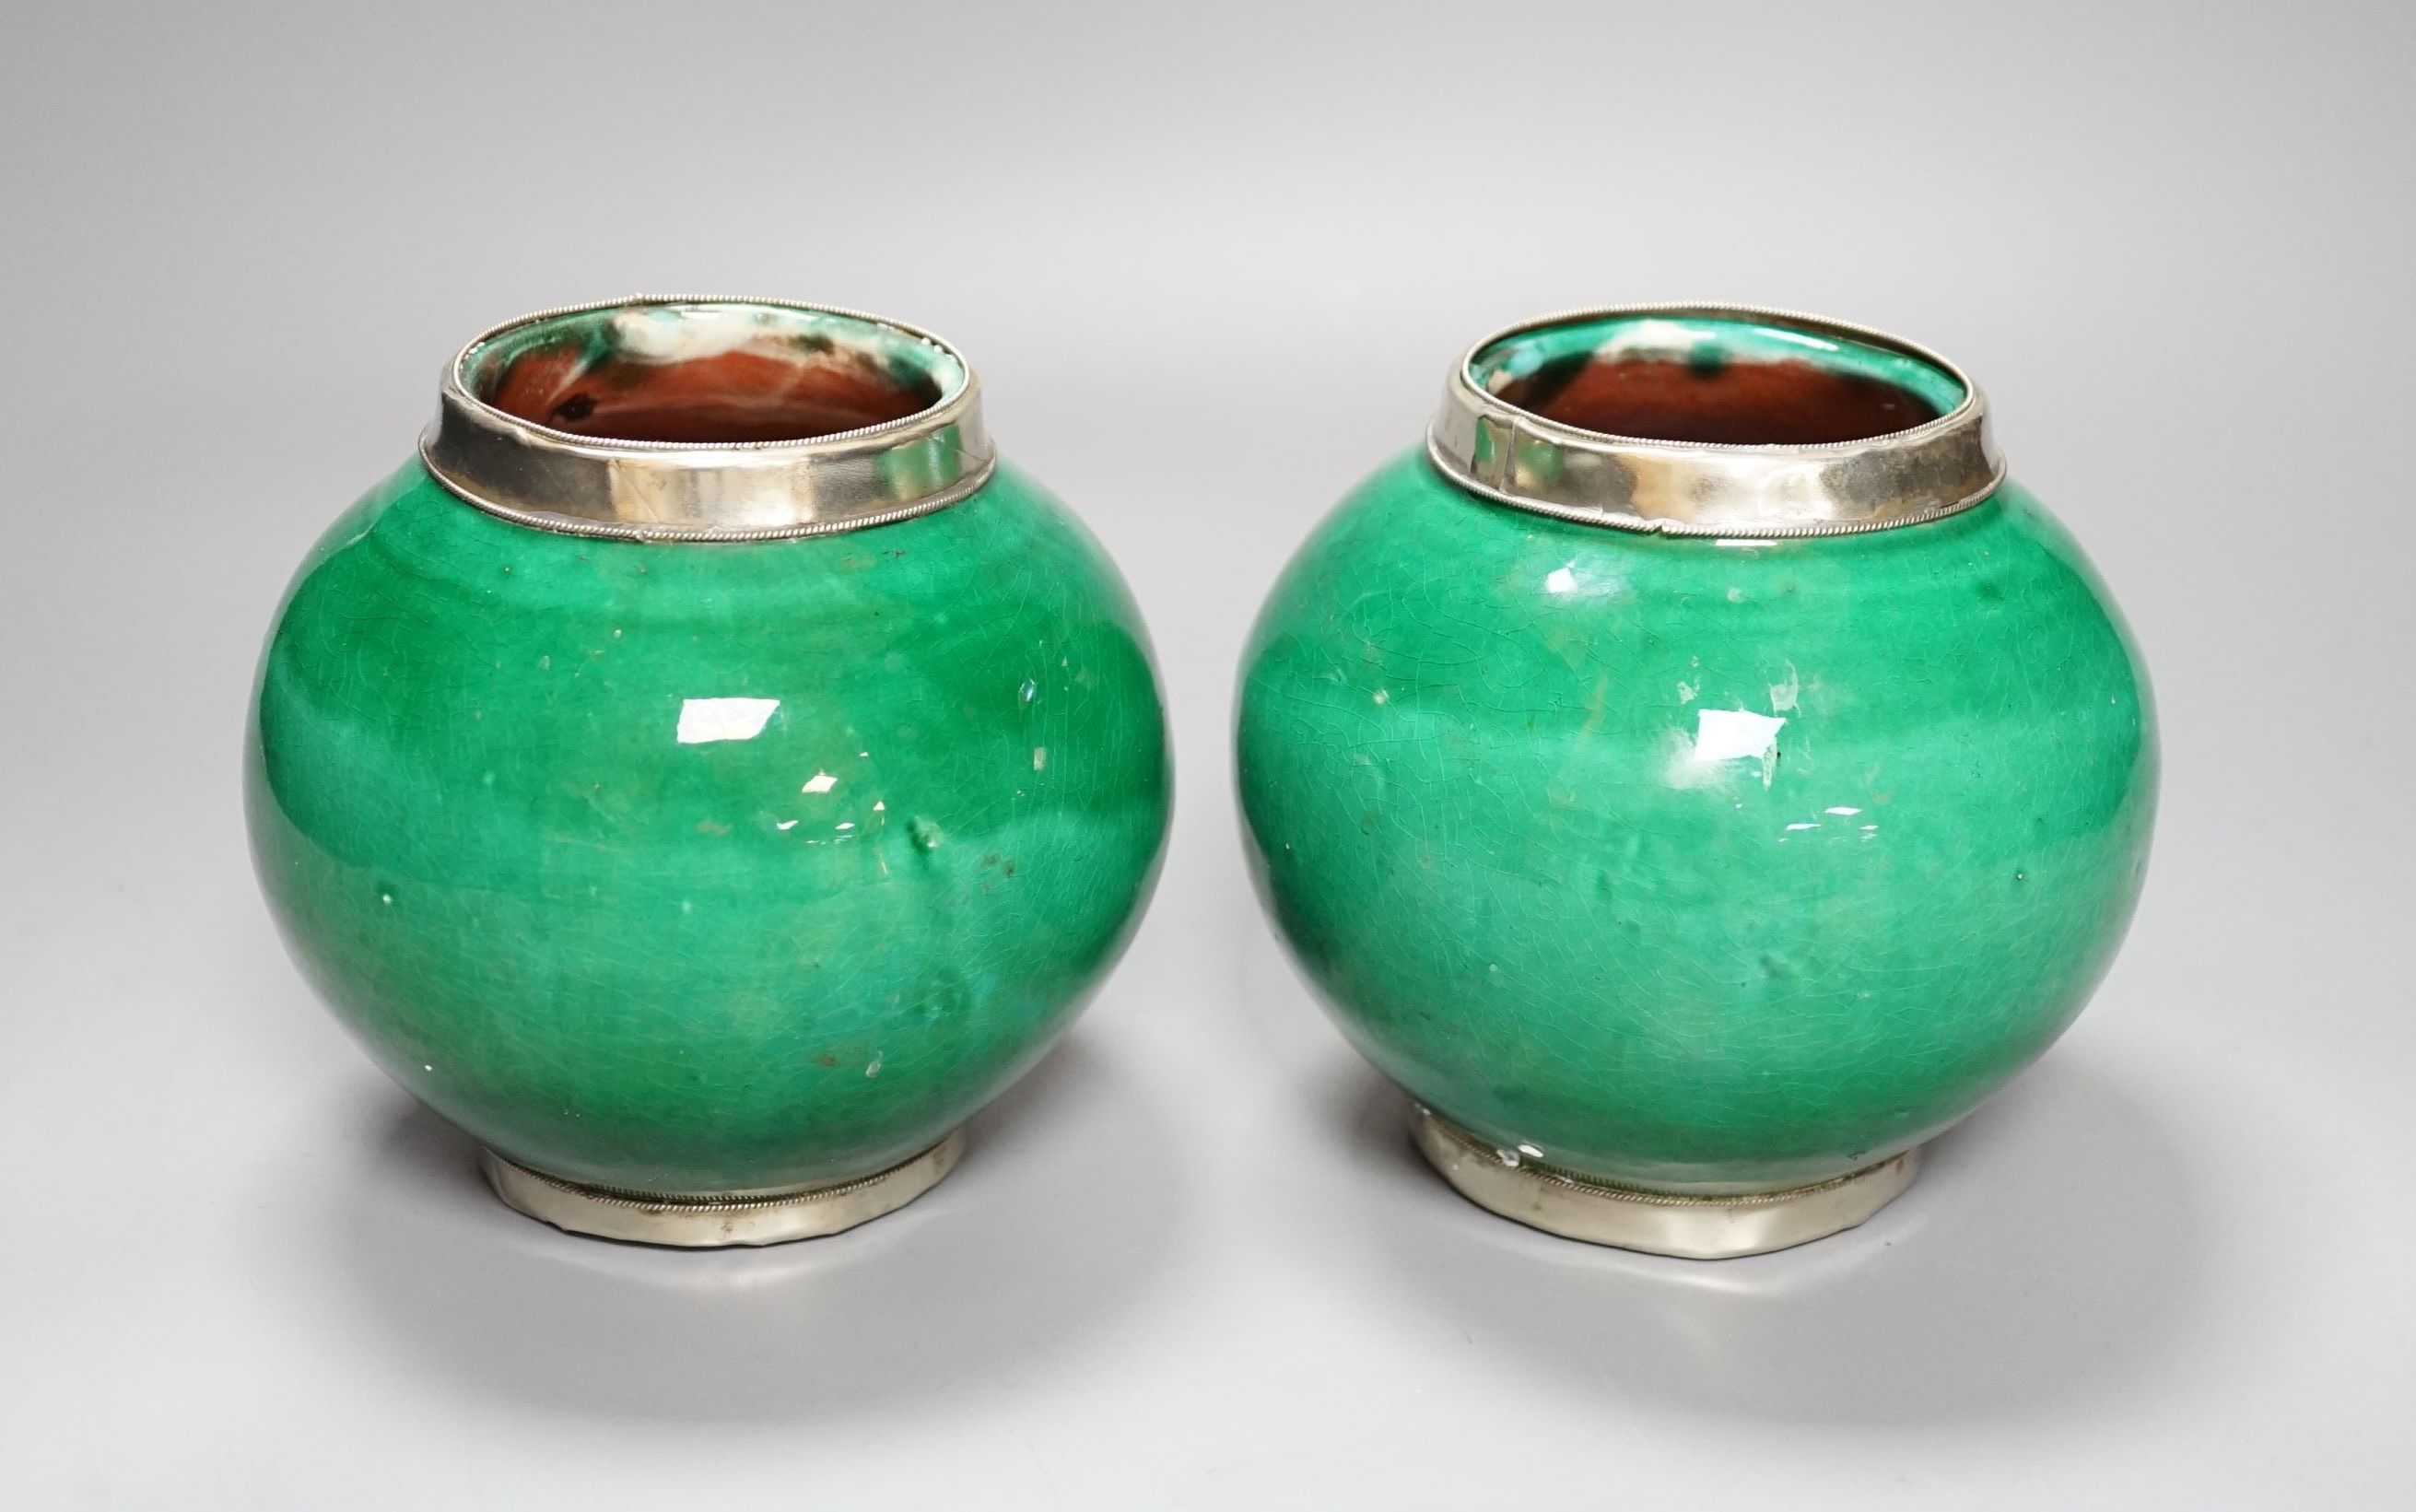 A pair of Tibetan green glazed vases - 14cm high